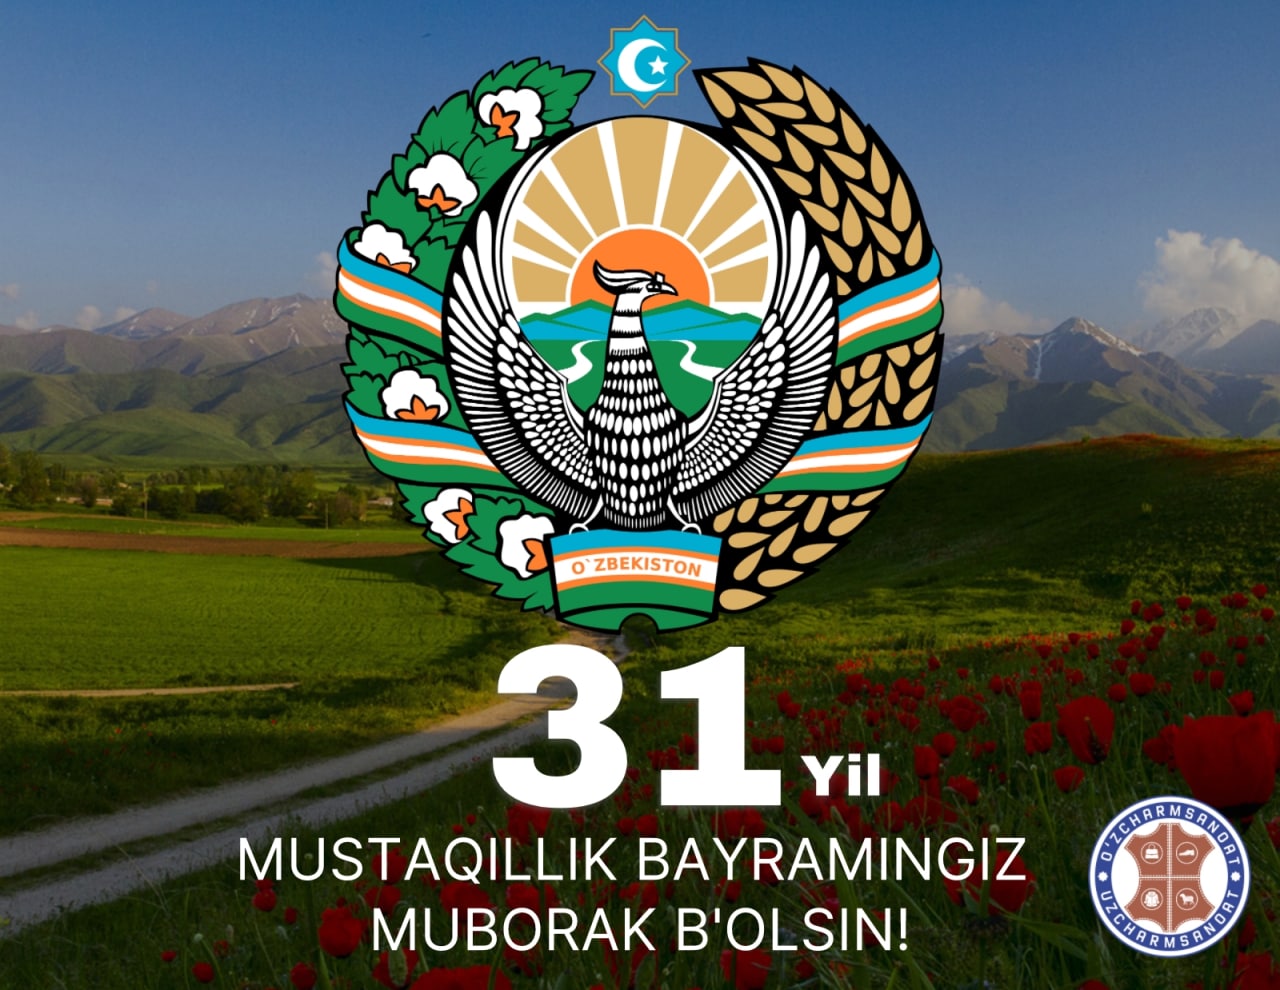 Коллектив Ассоциации «Узчармсаноат» искренне поздравляет Вас с 31-ой годовщиной Независимости Республики Узбекистан – самым дорогим и великим праздником, который является гарантом мира и развития нашей Родины.